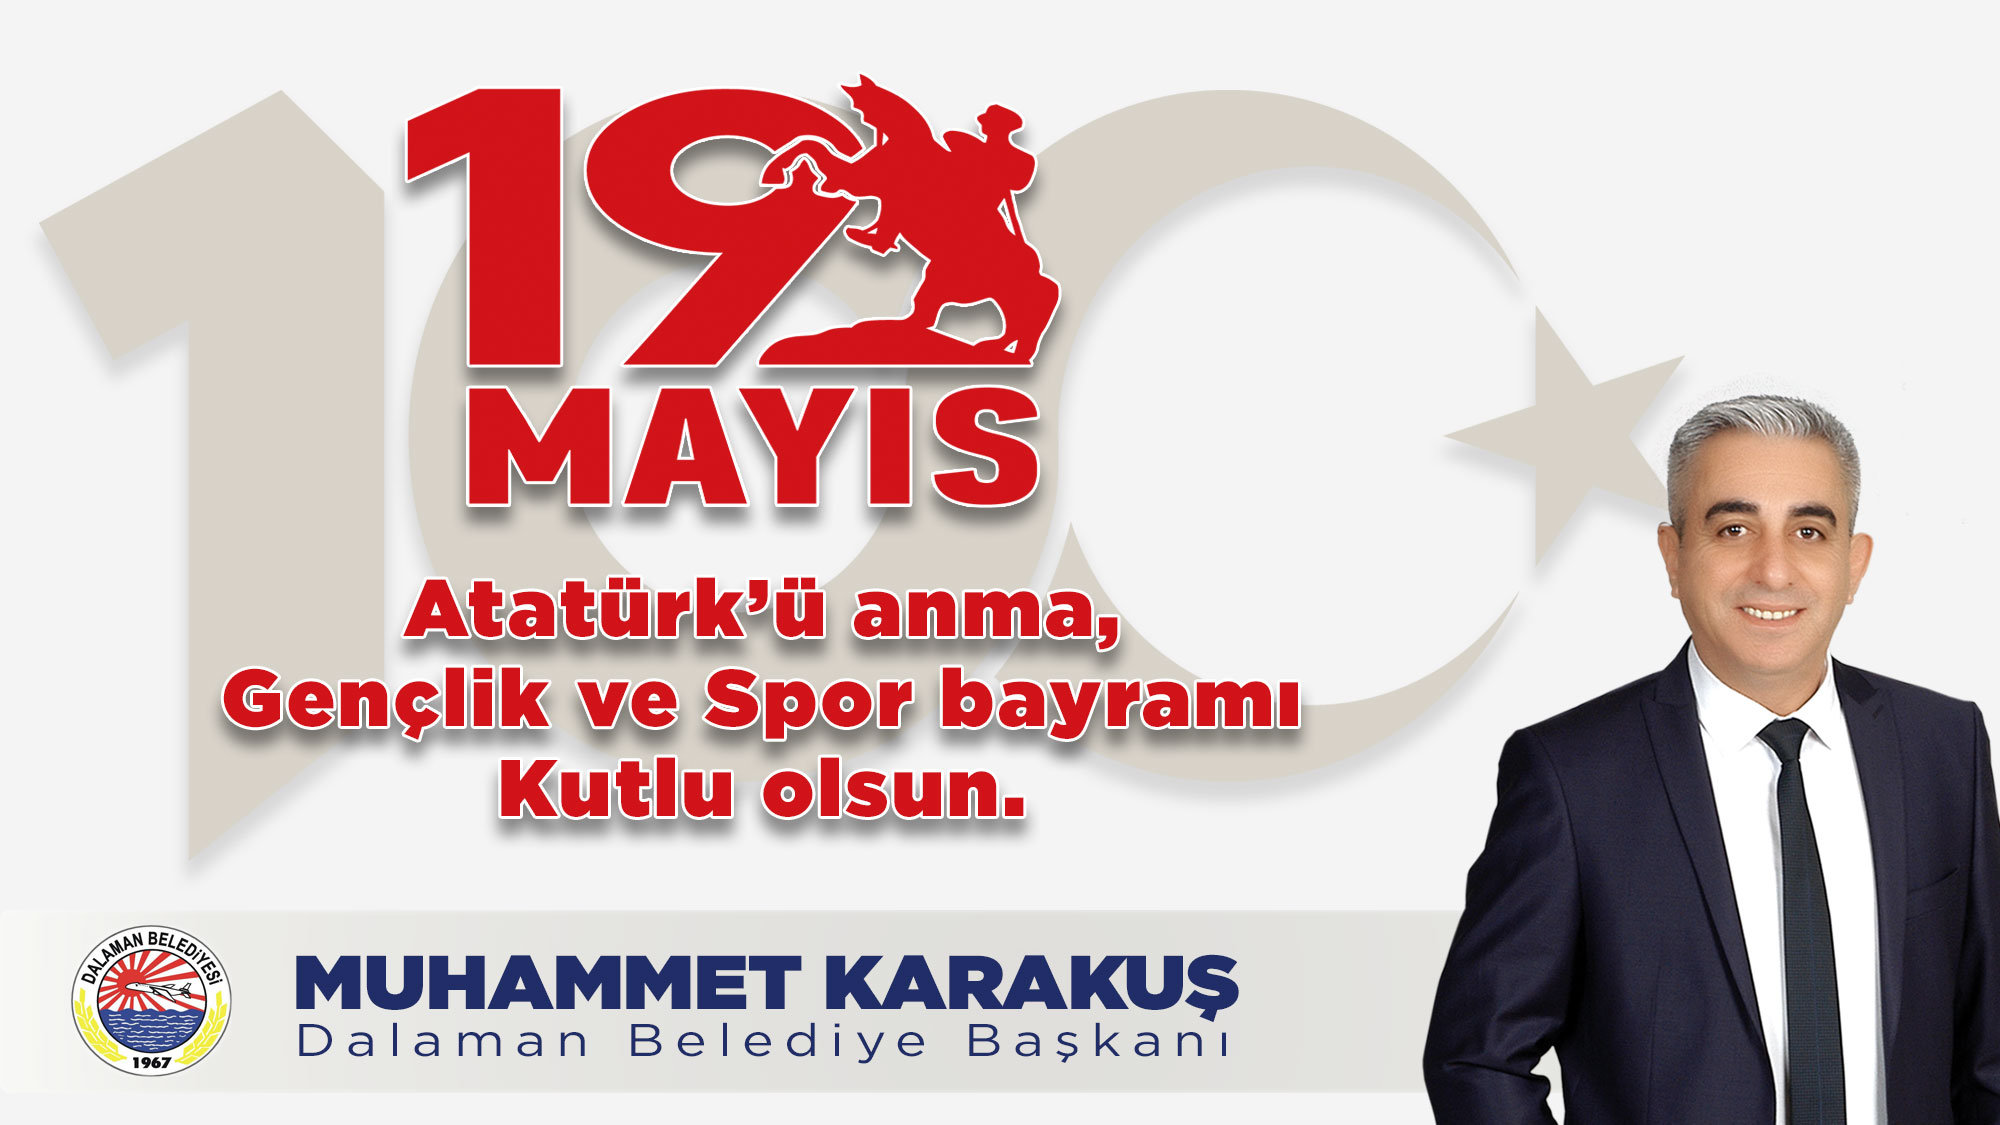 Dalaman Belediye Başkanı Muhammet Karakuş’un 19 Mayıs Gençlik ve Spor Bayramı Kutlama mesajı